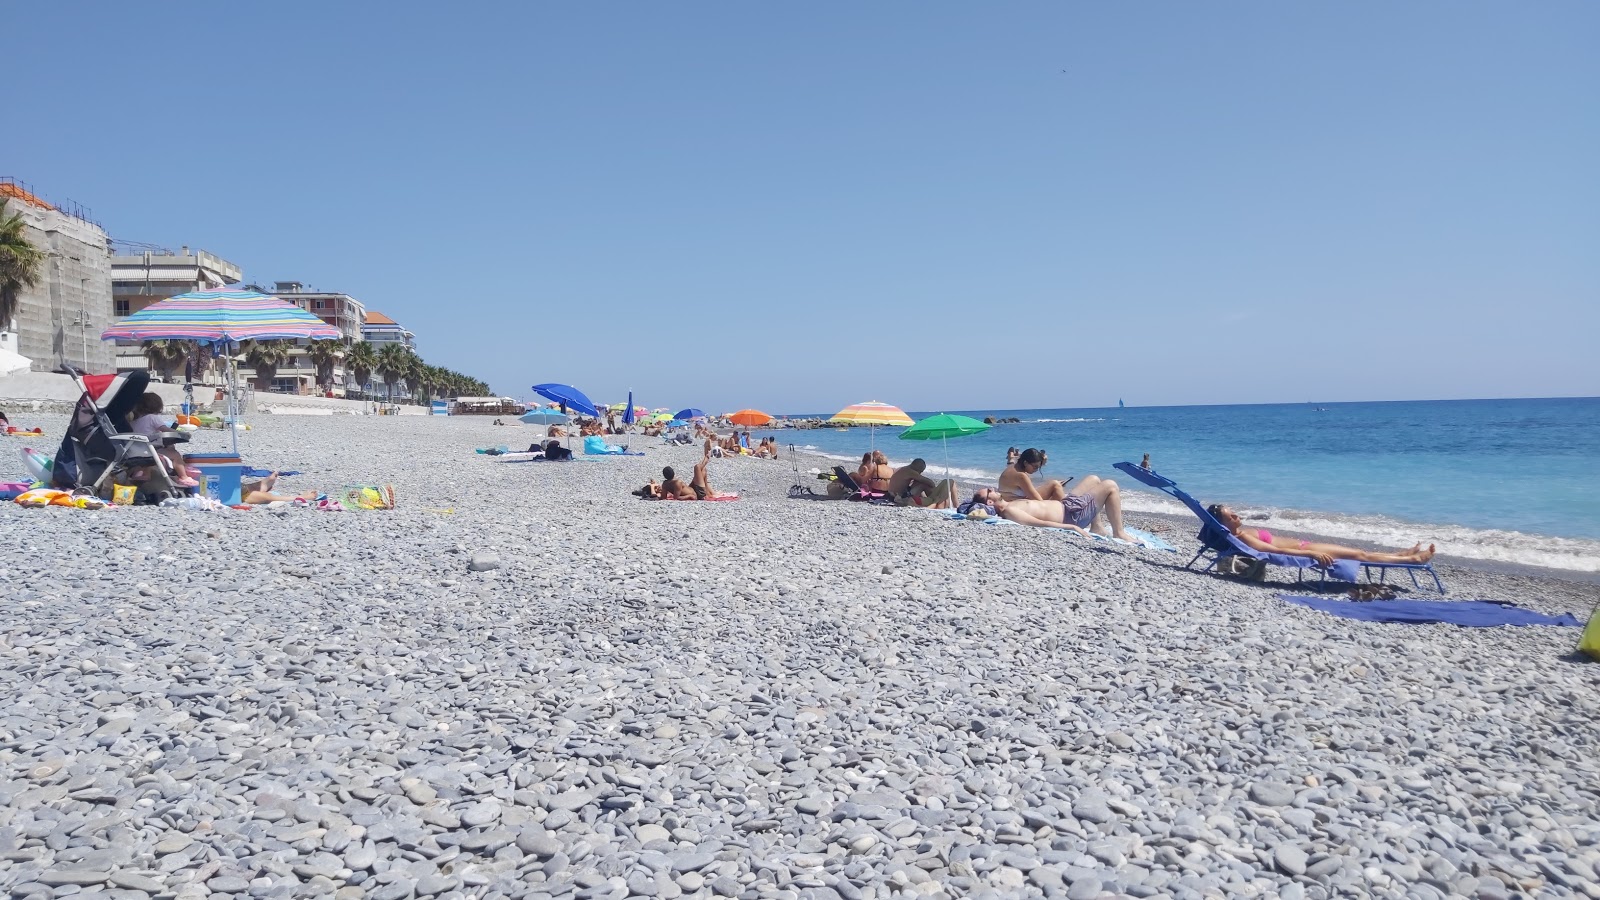 Φωτογραφία του Spiaggia Ventimiglia περιοχή θέρετρου στην παραλία